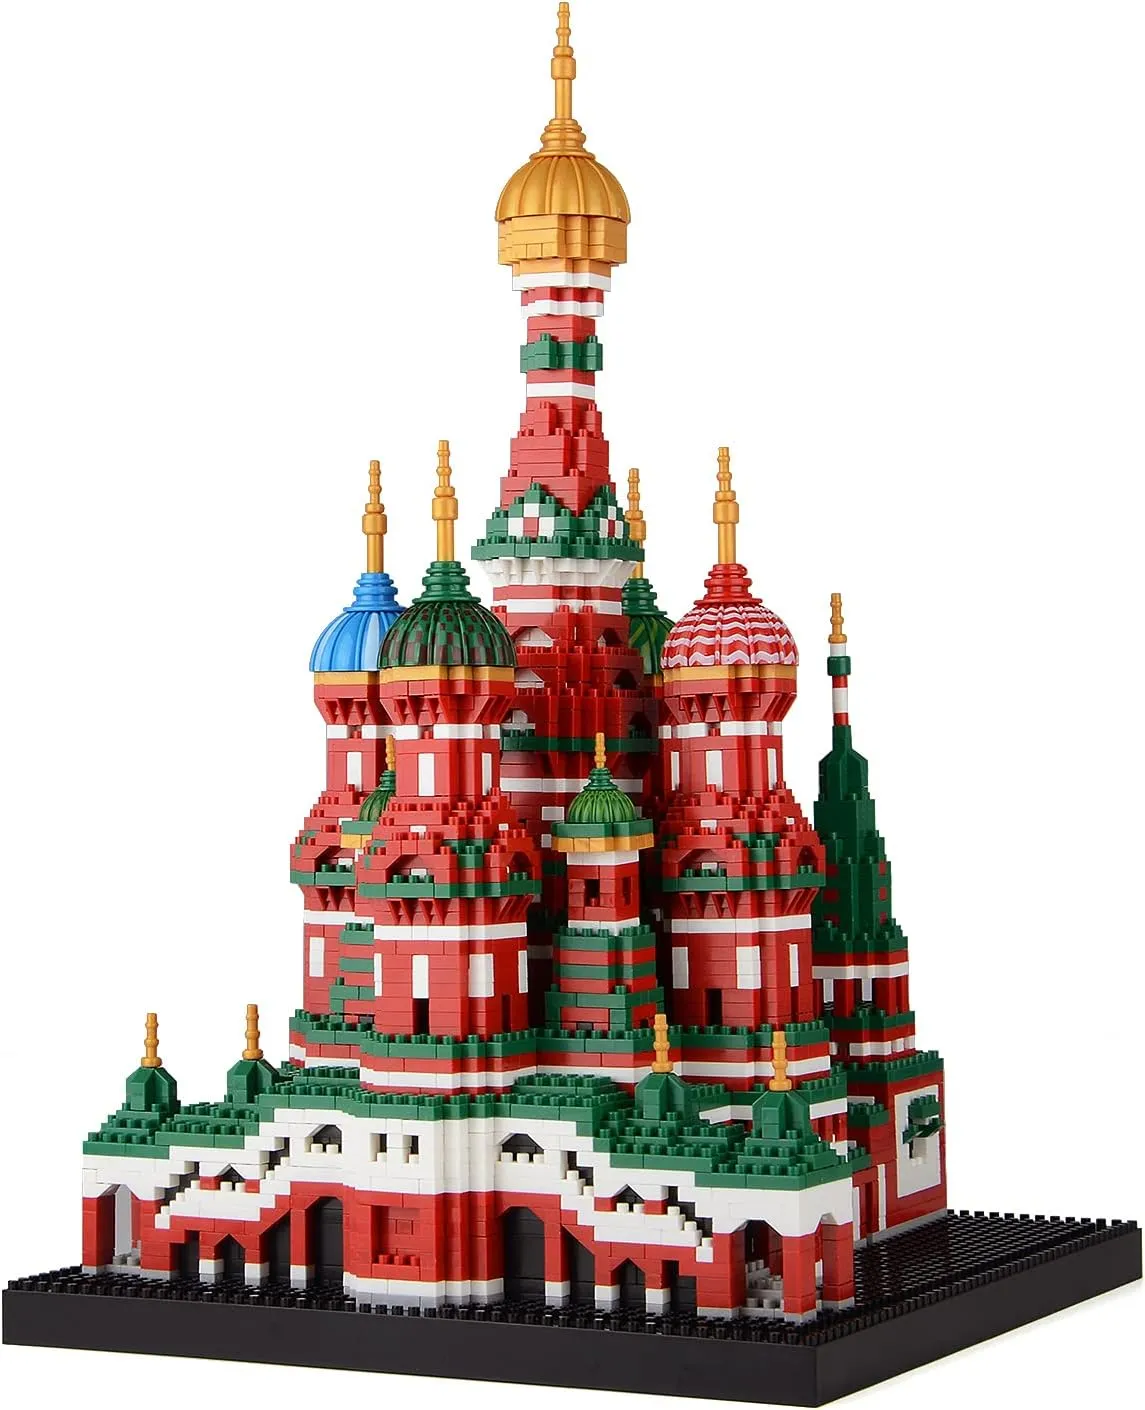 كاتدرائية سانت باسيل ، مجموعة لبنة مشهورة عالميا ، ألعاب تعليمية ، هدايا للبالغين والأطفال (4300 قطعة)